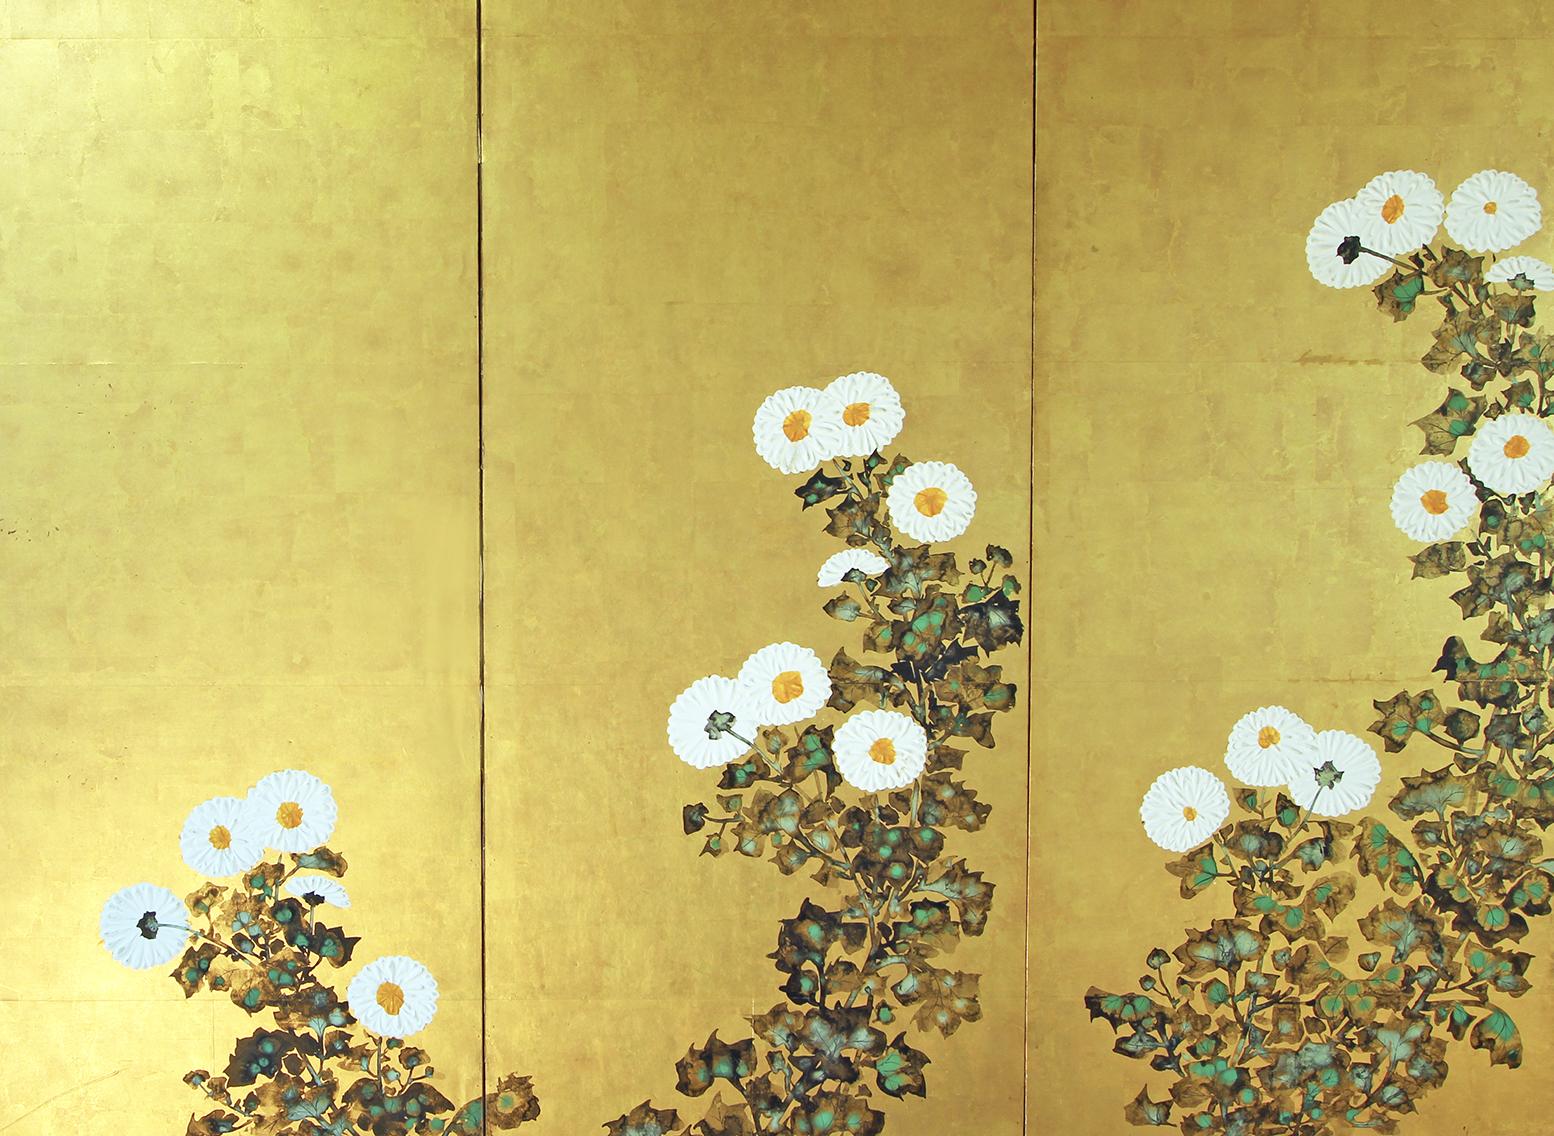 Paesaggio primaverile di ignoto pittore della scuola Rinpa, XIX secolo, inchiostro a sei pannelli dipinto su foglia oro su carta di riso.
Les fleurs sont réalisées avec la technique du 